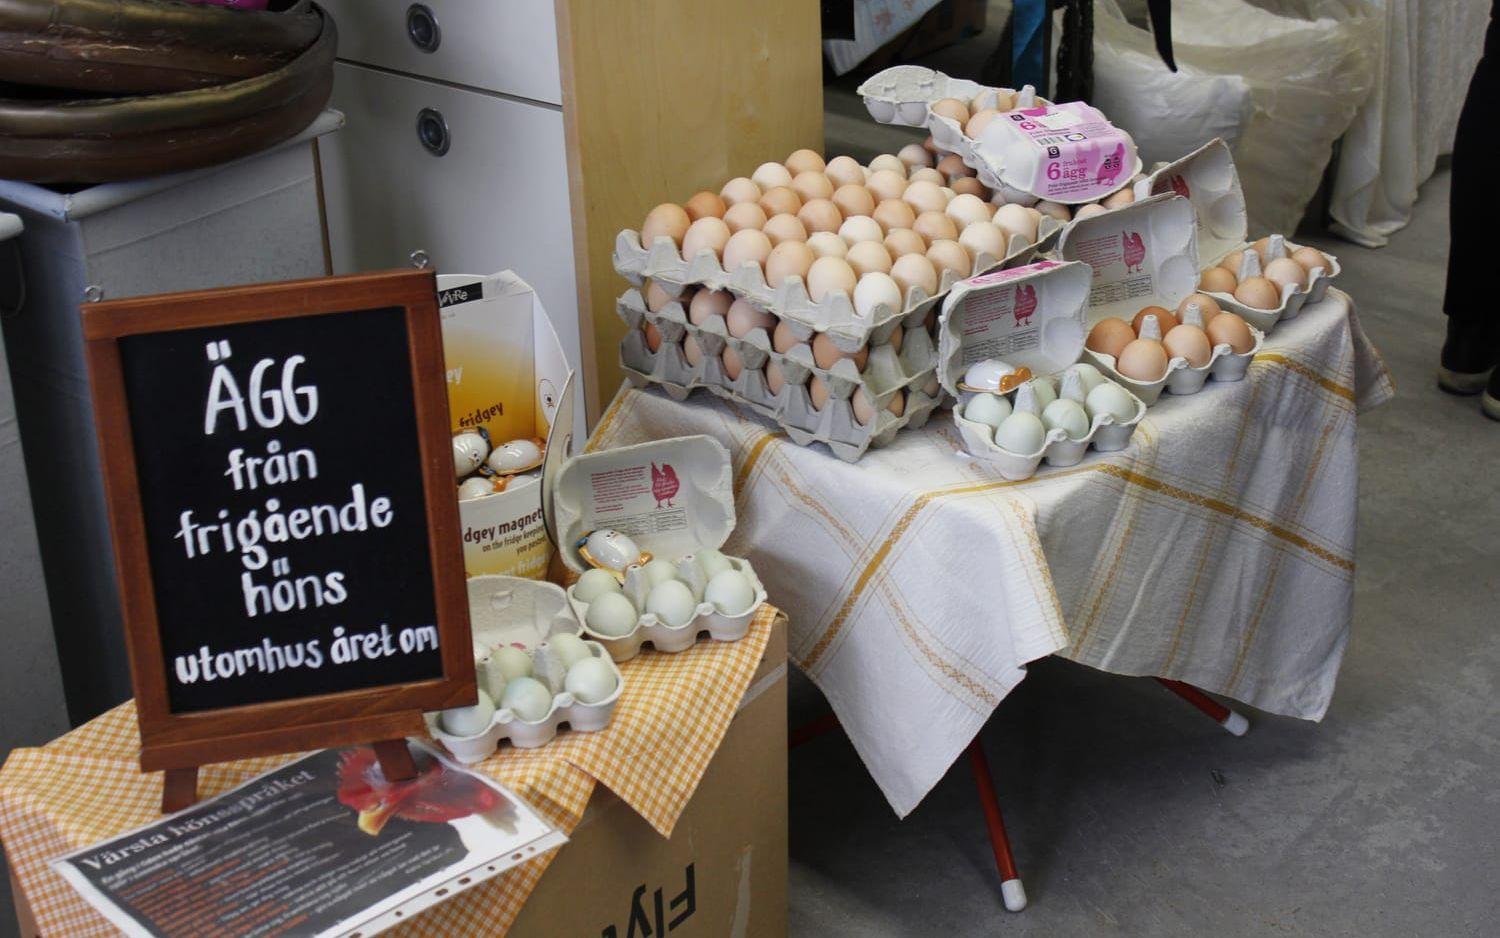 Färska saker såldes också, som de här äggen från frigående höns.